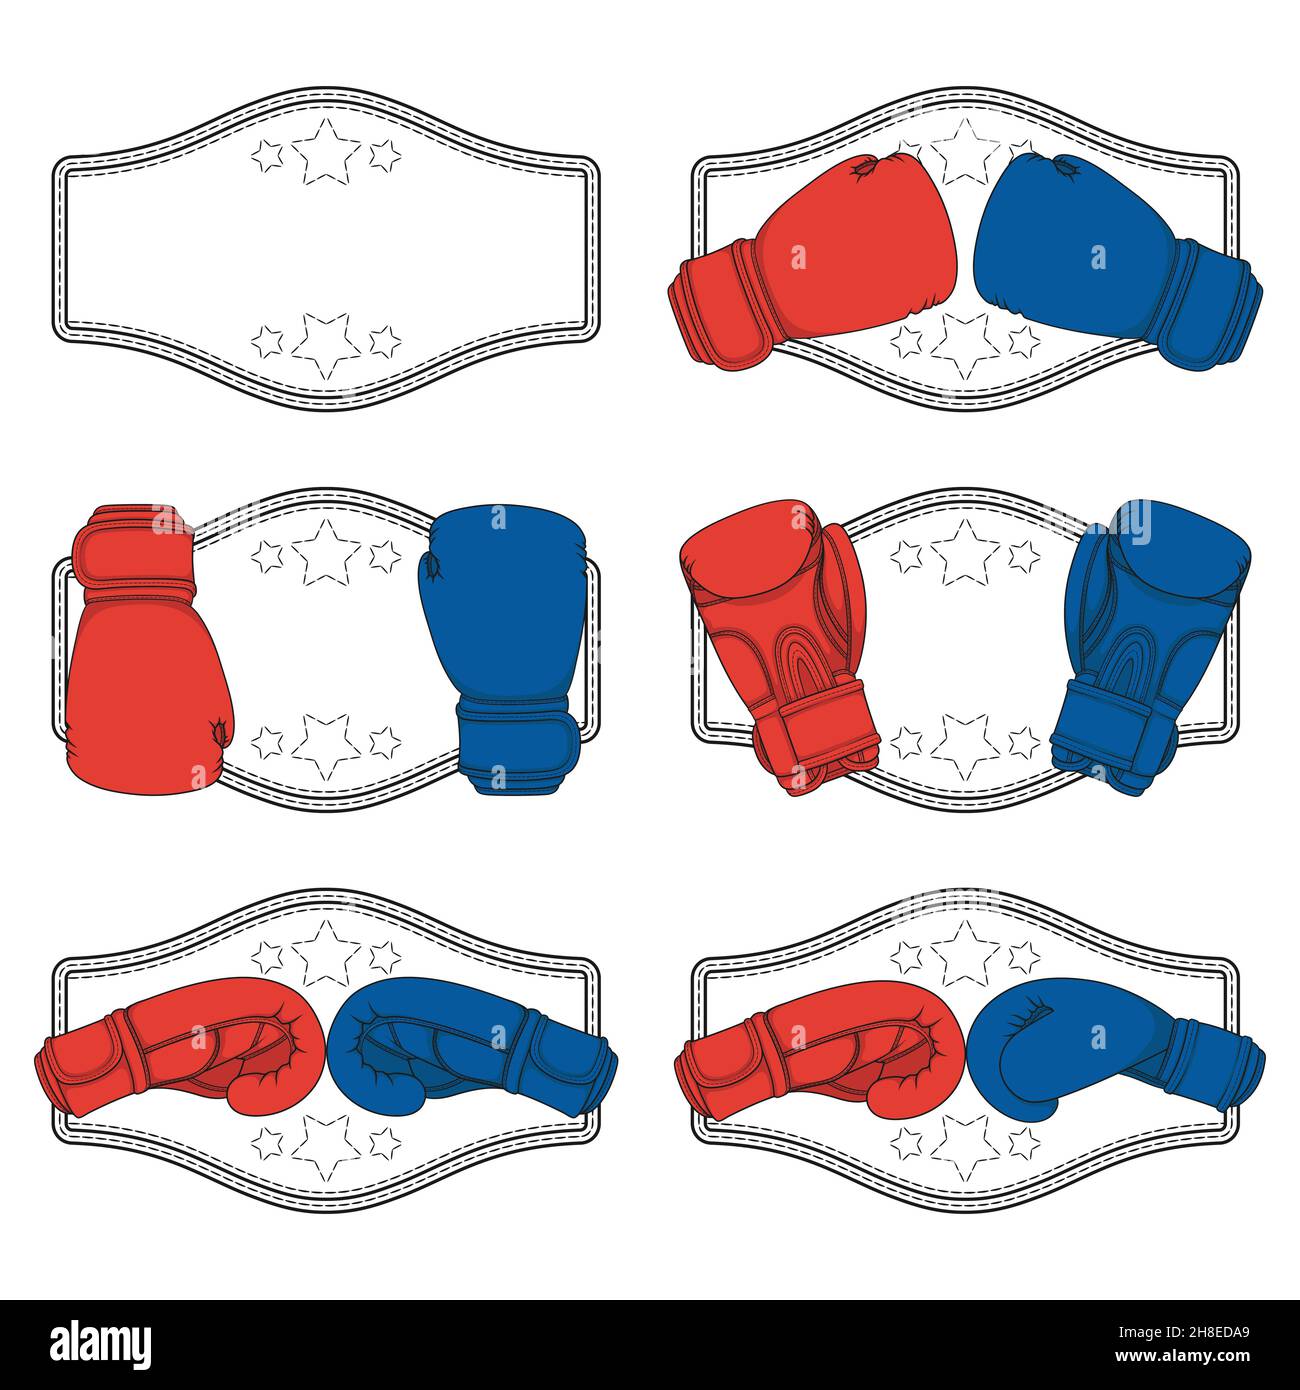 Jeu d'illustrations en couleur avec gants de boxe rouges et bleus et  ceinture du gagnant.Objets vectoriels isolés sur fond blanc Image  Vectorielle Stock - Alamy